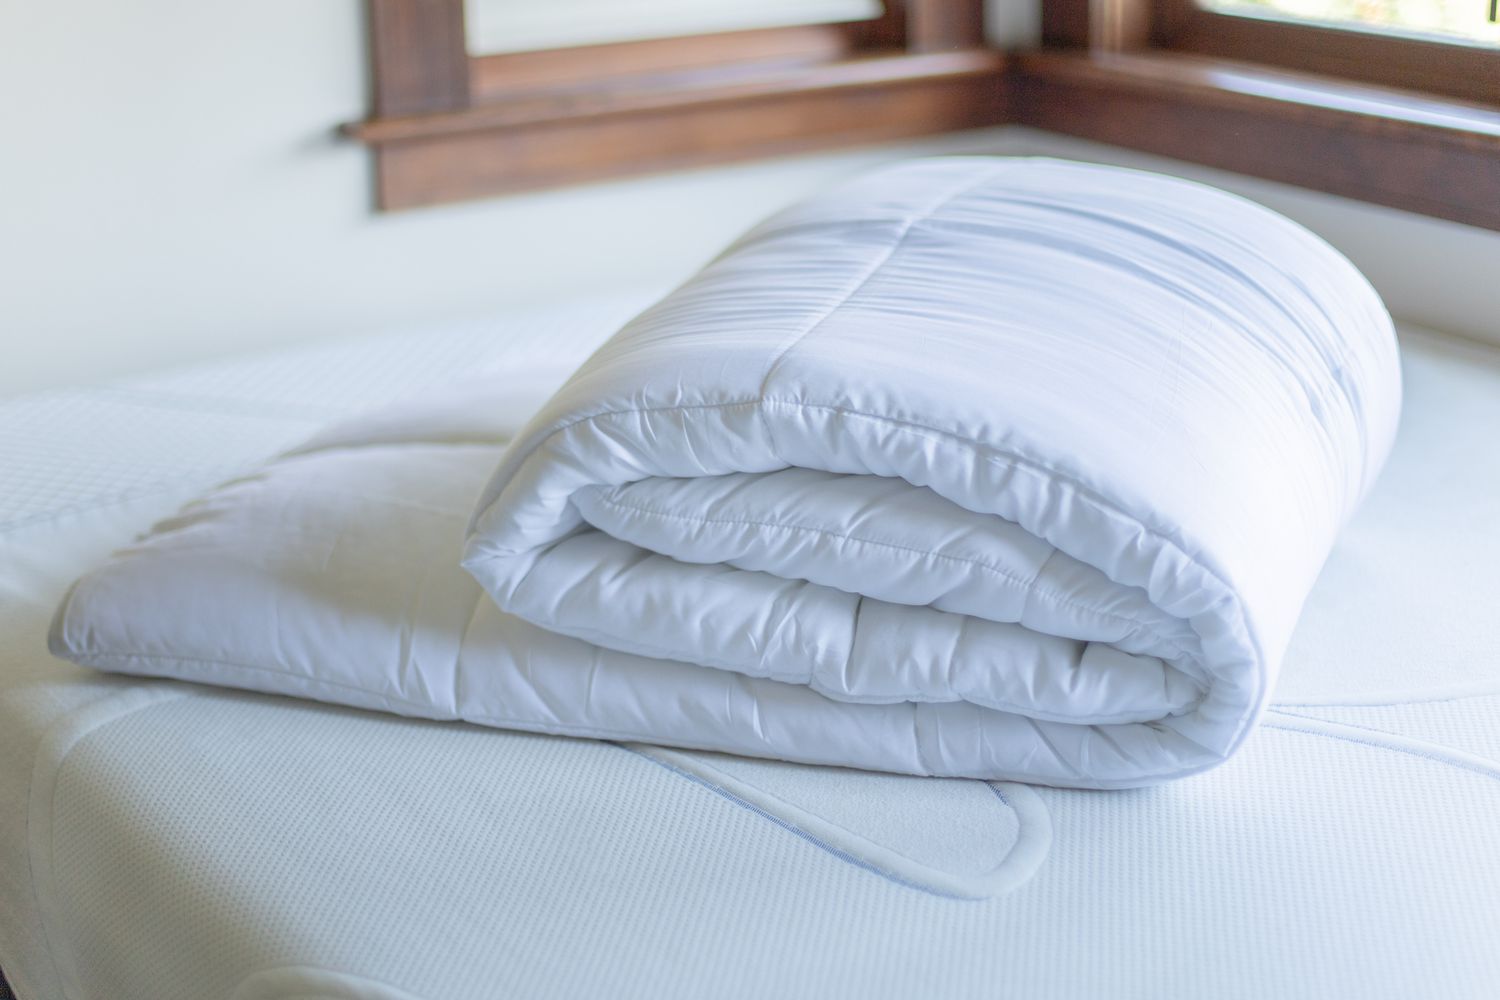 Bettdecke gefaltet auf einer Matratze